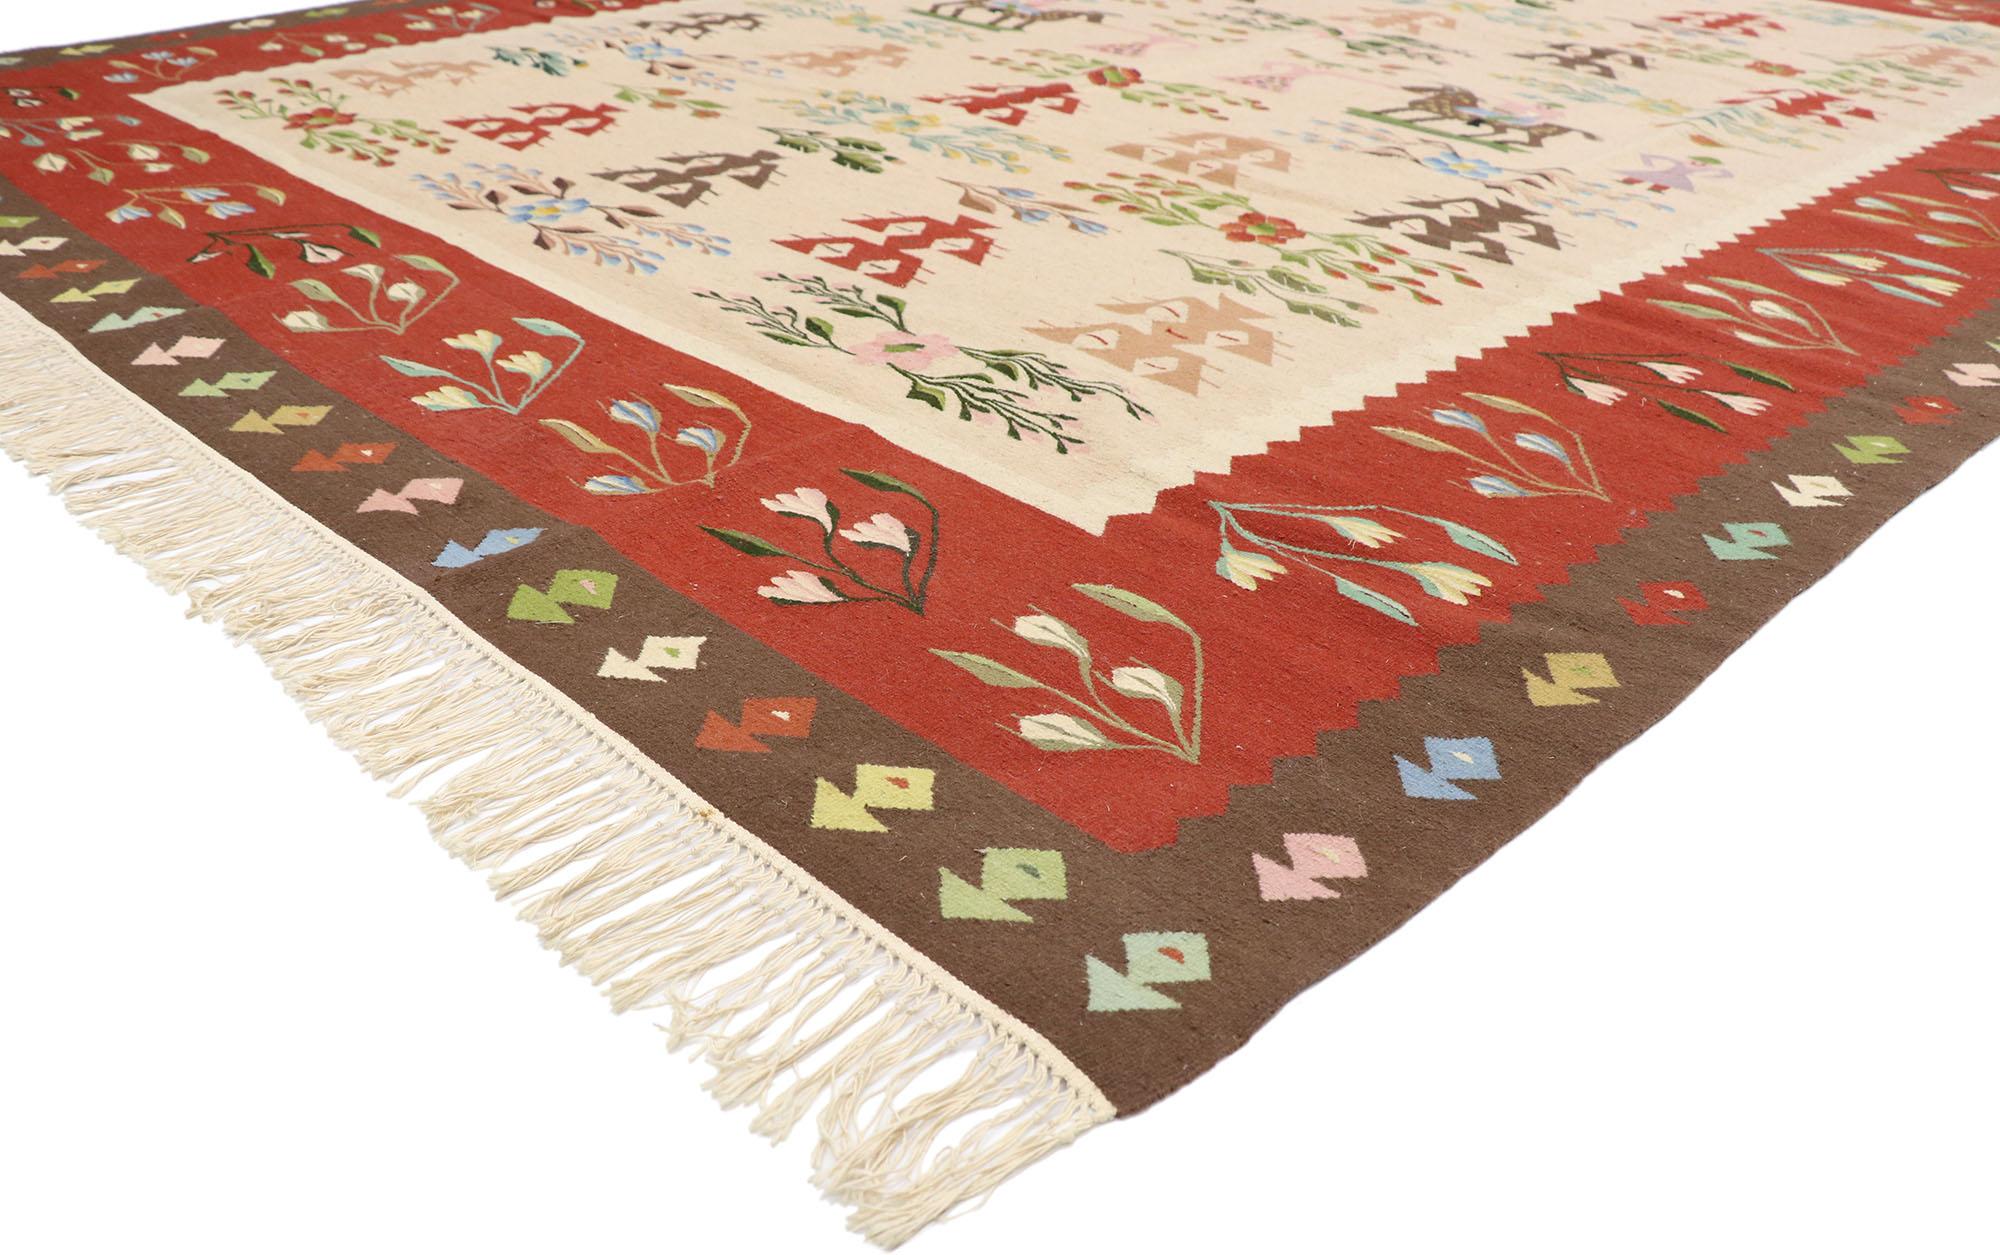 77920 tapis Kilim roumain vintage avec style Folk Art 09'00 x 11'09. Plein de petits détails et d'un design expressif audacieux combiné à un style d'art populaire, ce tapis kilim roumain vintage en laine tissé à la main est une vision captivante de